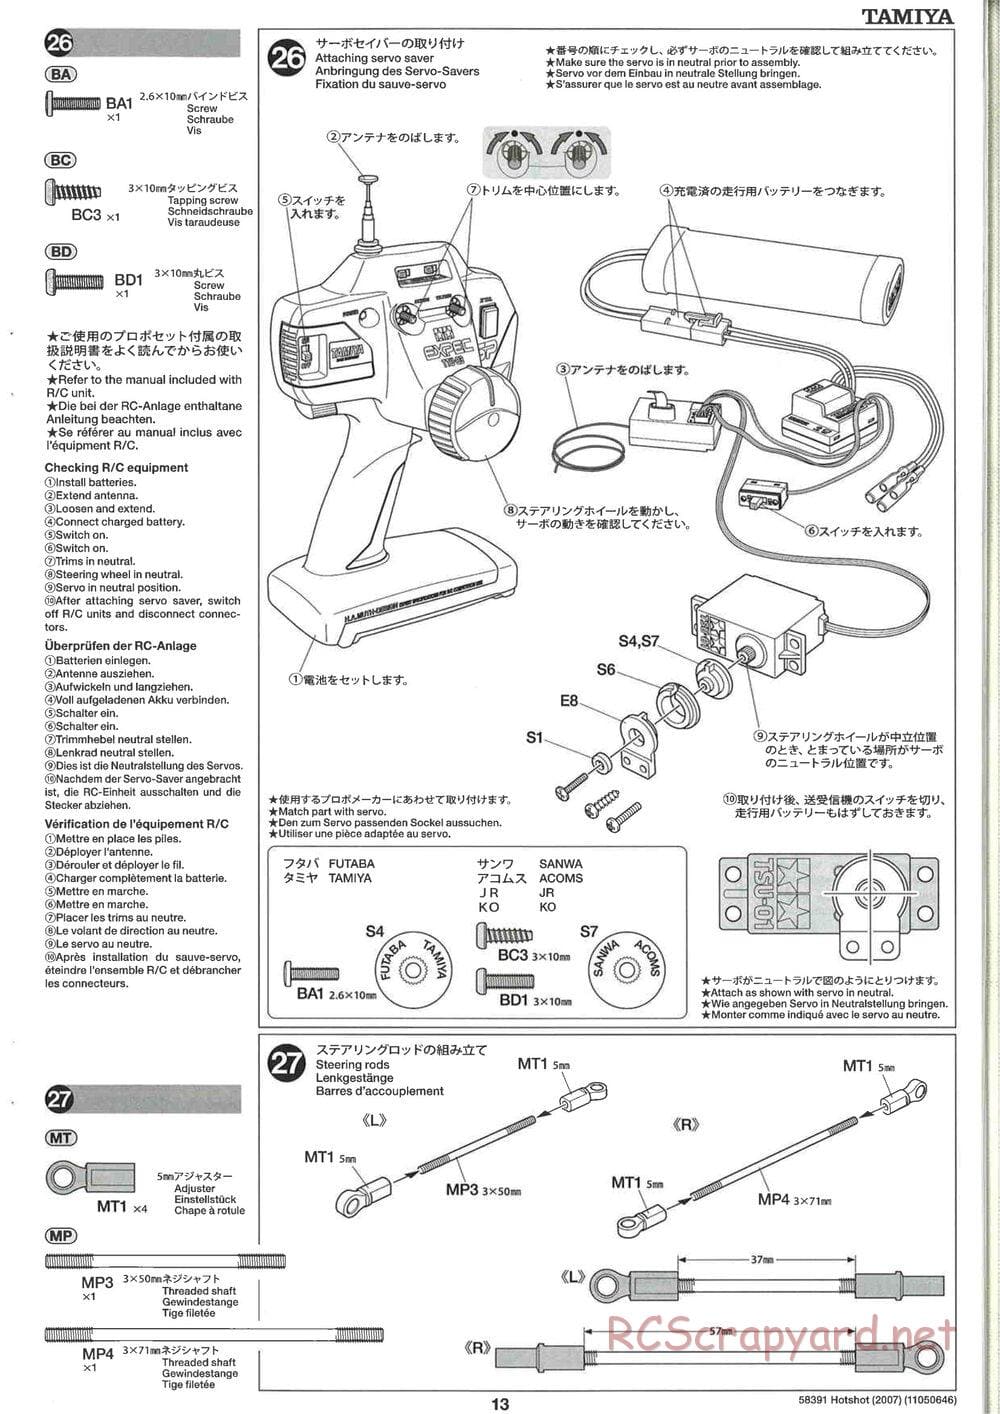 Tamiya - Hotshot - 2007 - HS Chassis - Manual - Page 13